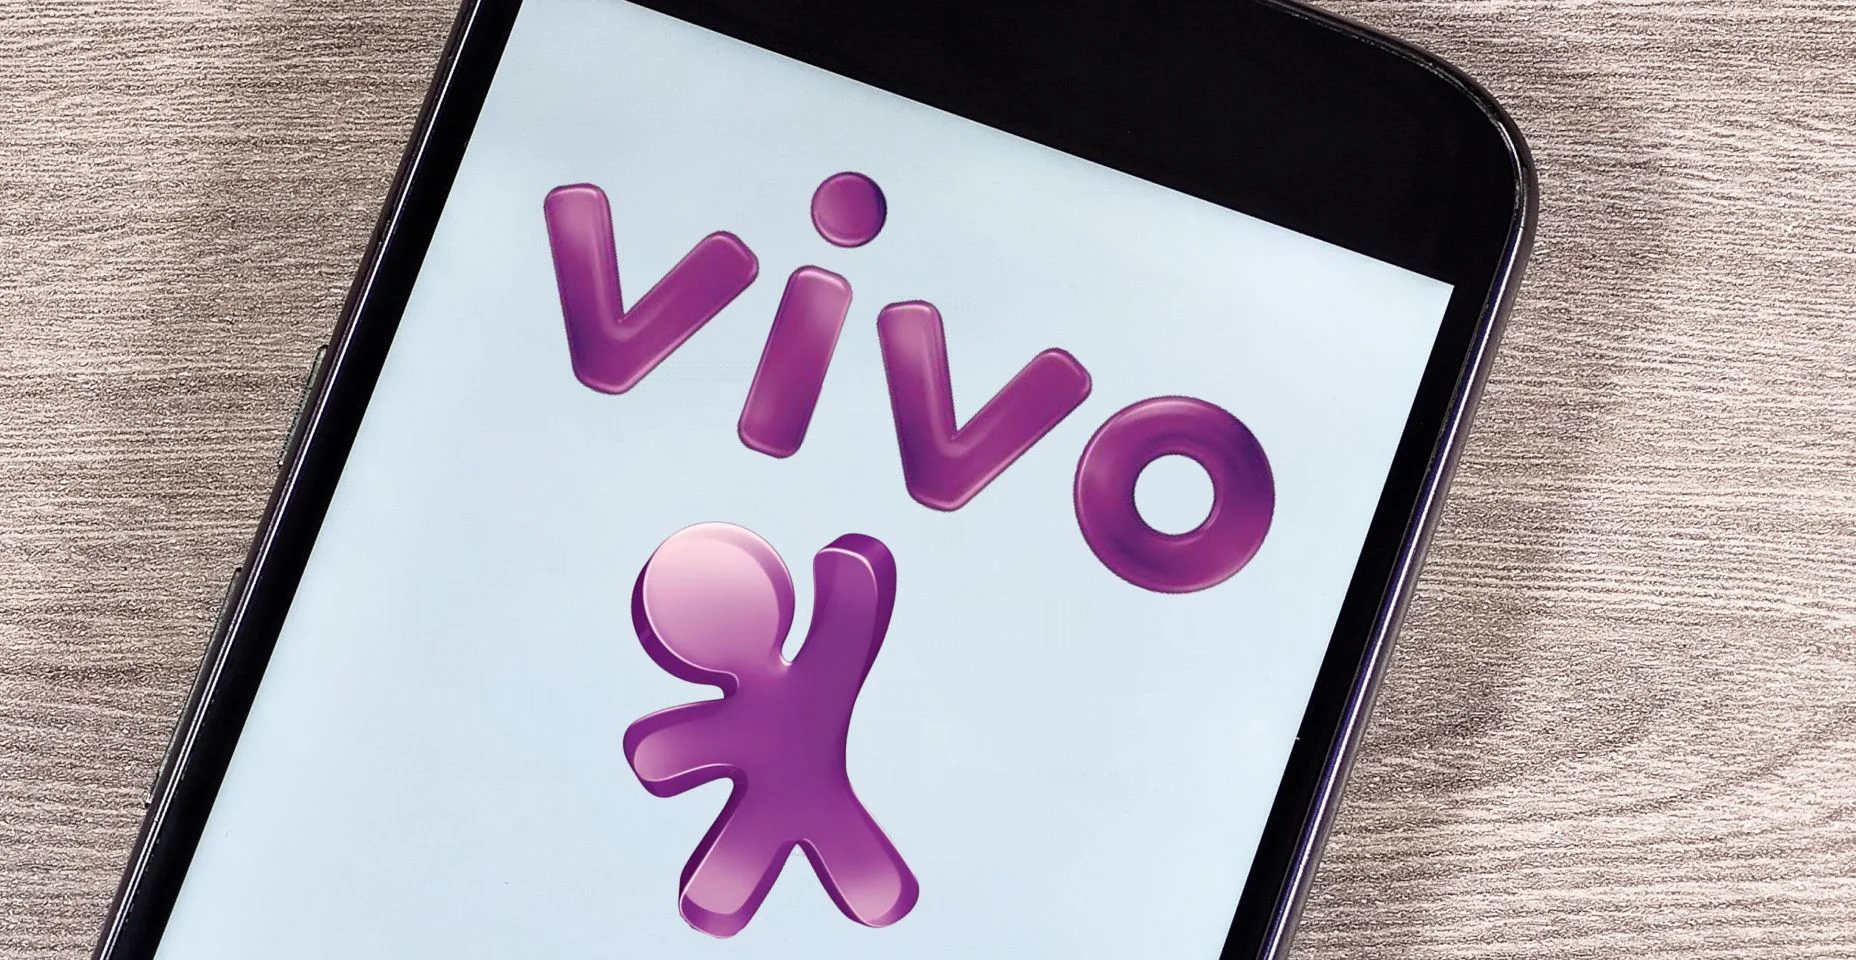 Logotipo da operadora Vivo na tela do smartphone. Vivo é marca registrada da Telefônica Brasil e concessionária de telefonia fixa.